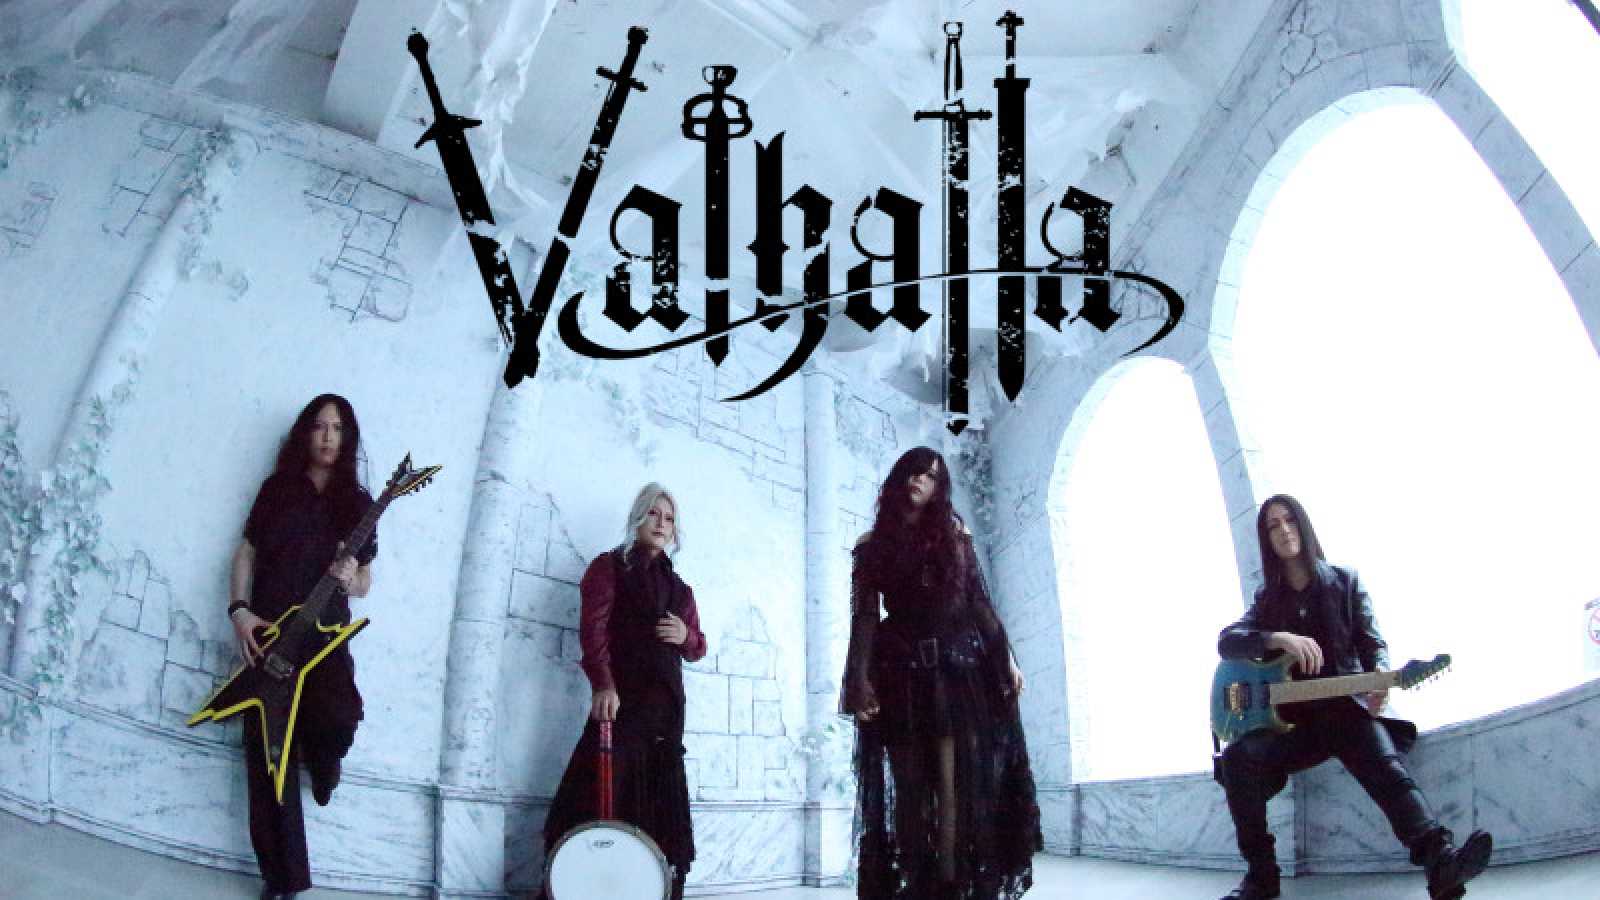 Valhalla © Valhalla. All rights reserved.